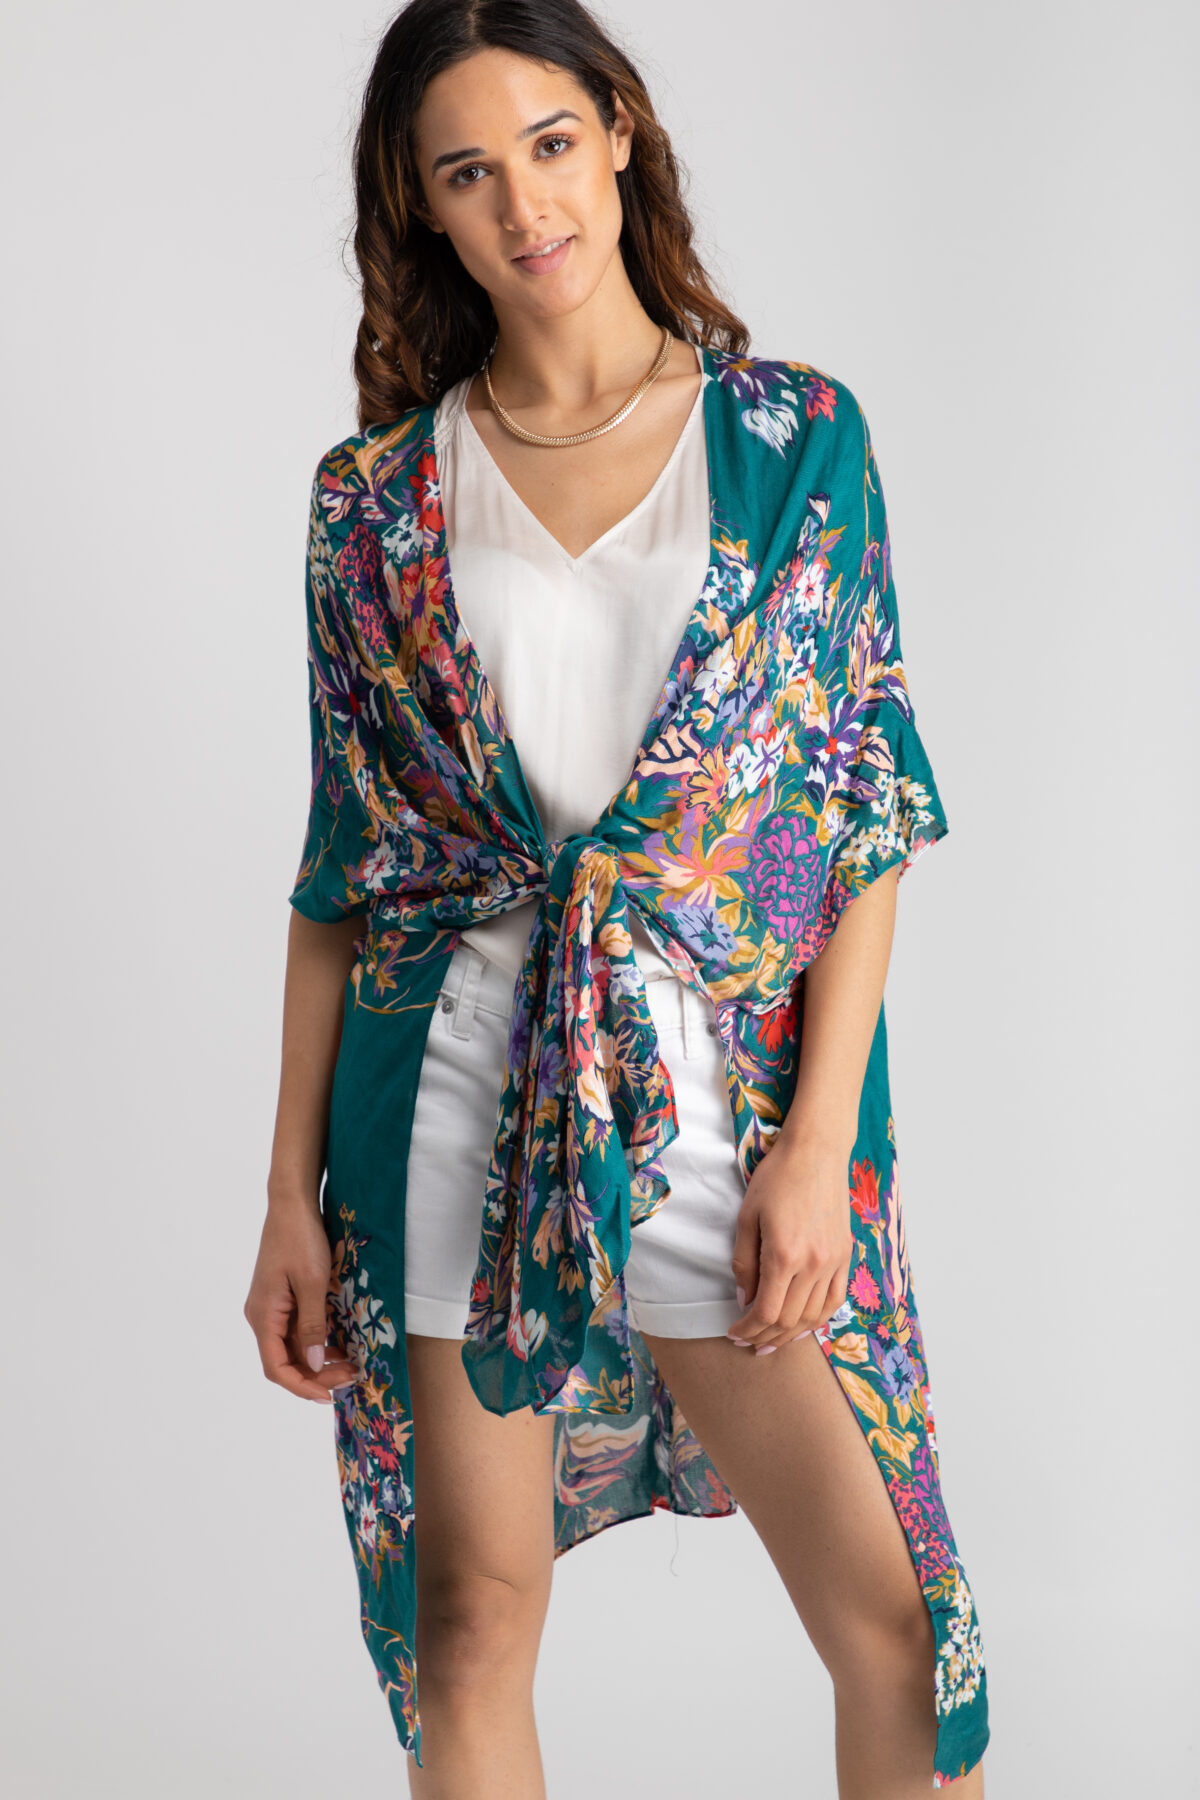 Women’s Kimonos of Various Styles